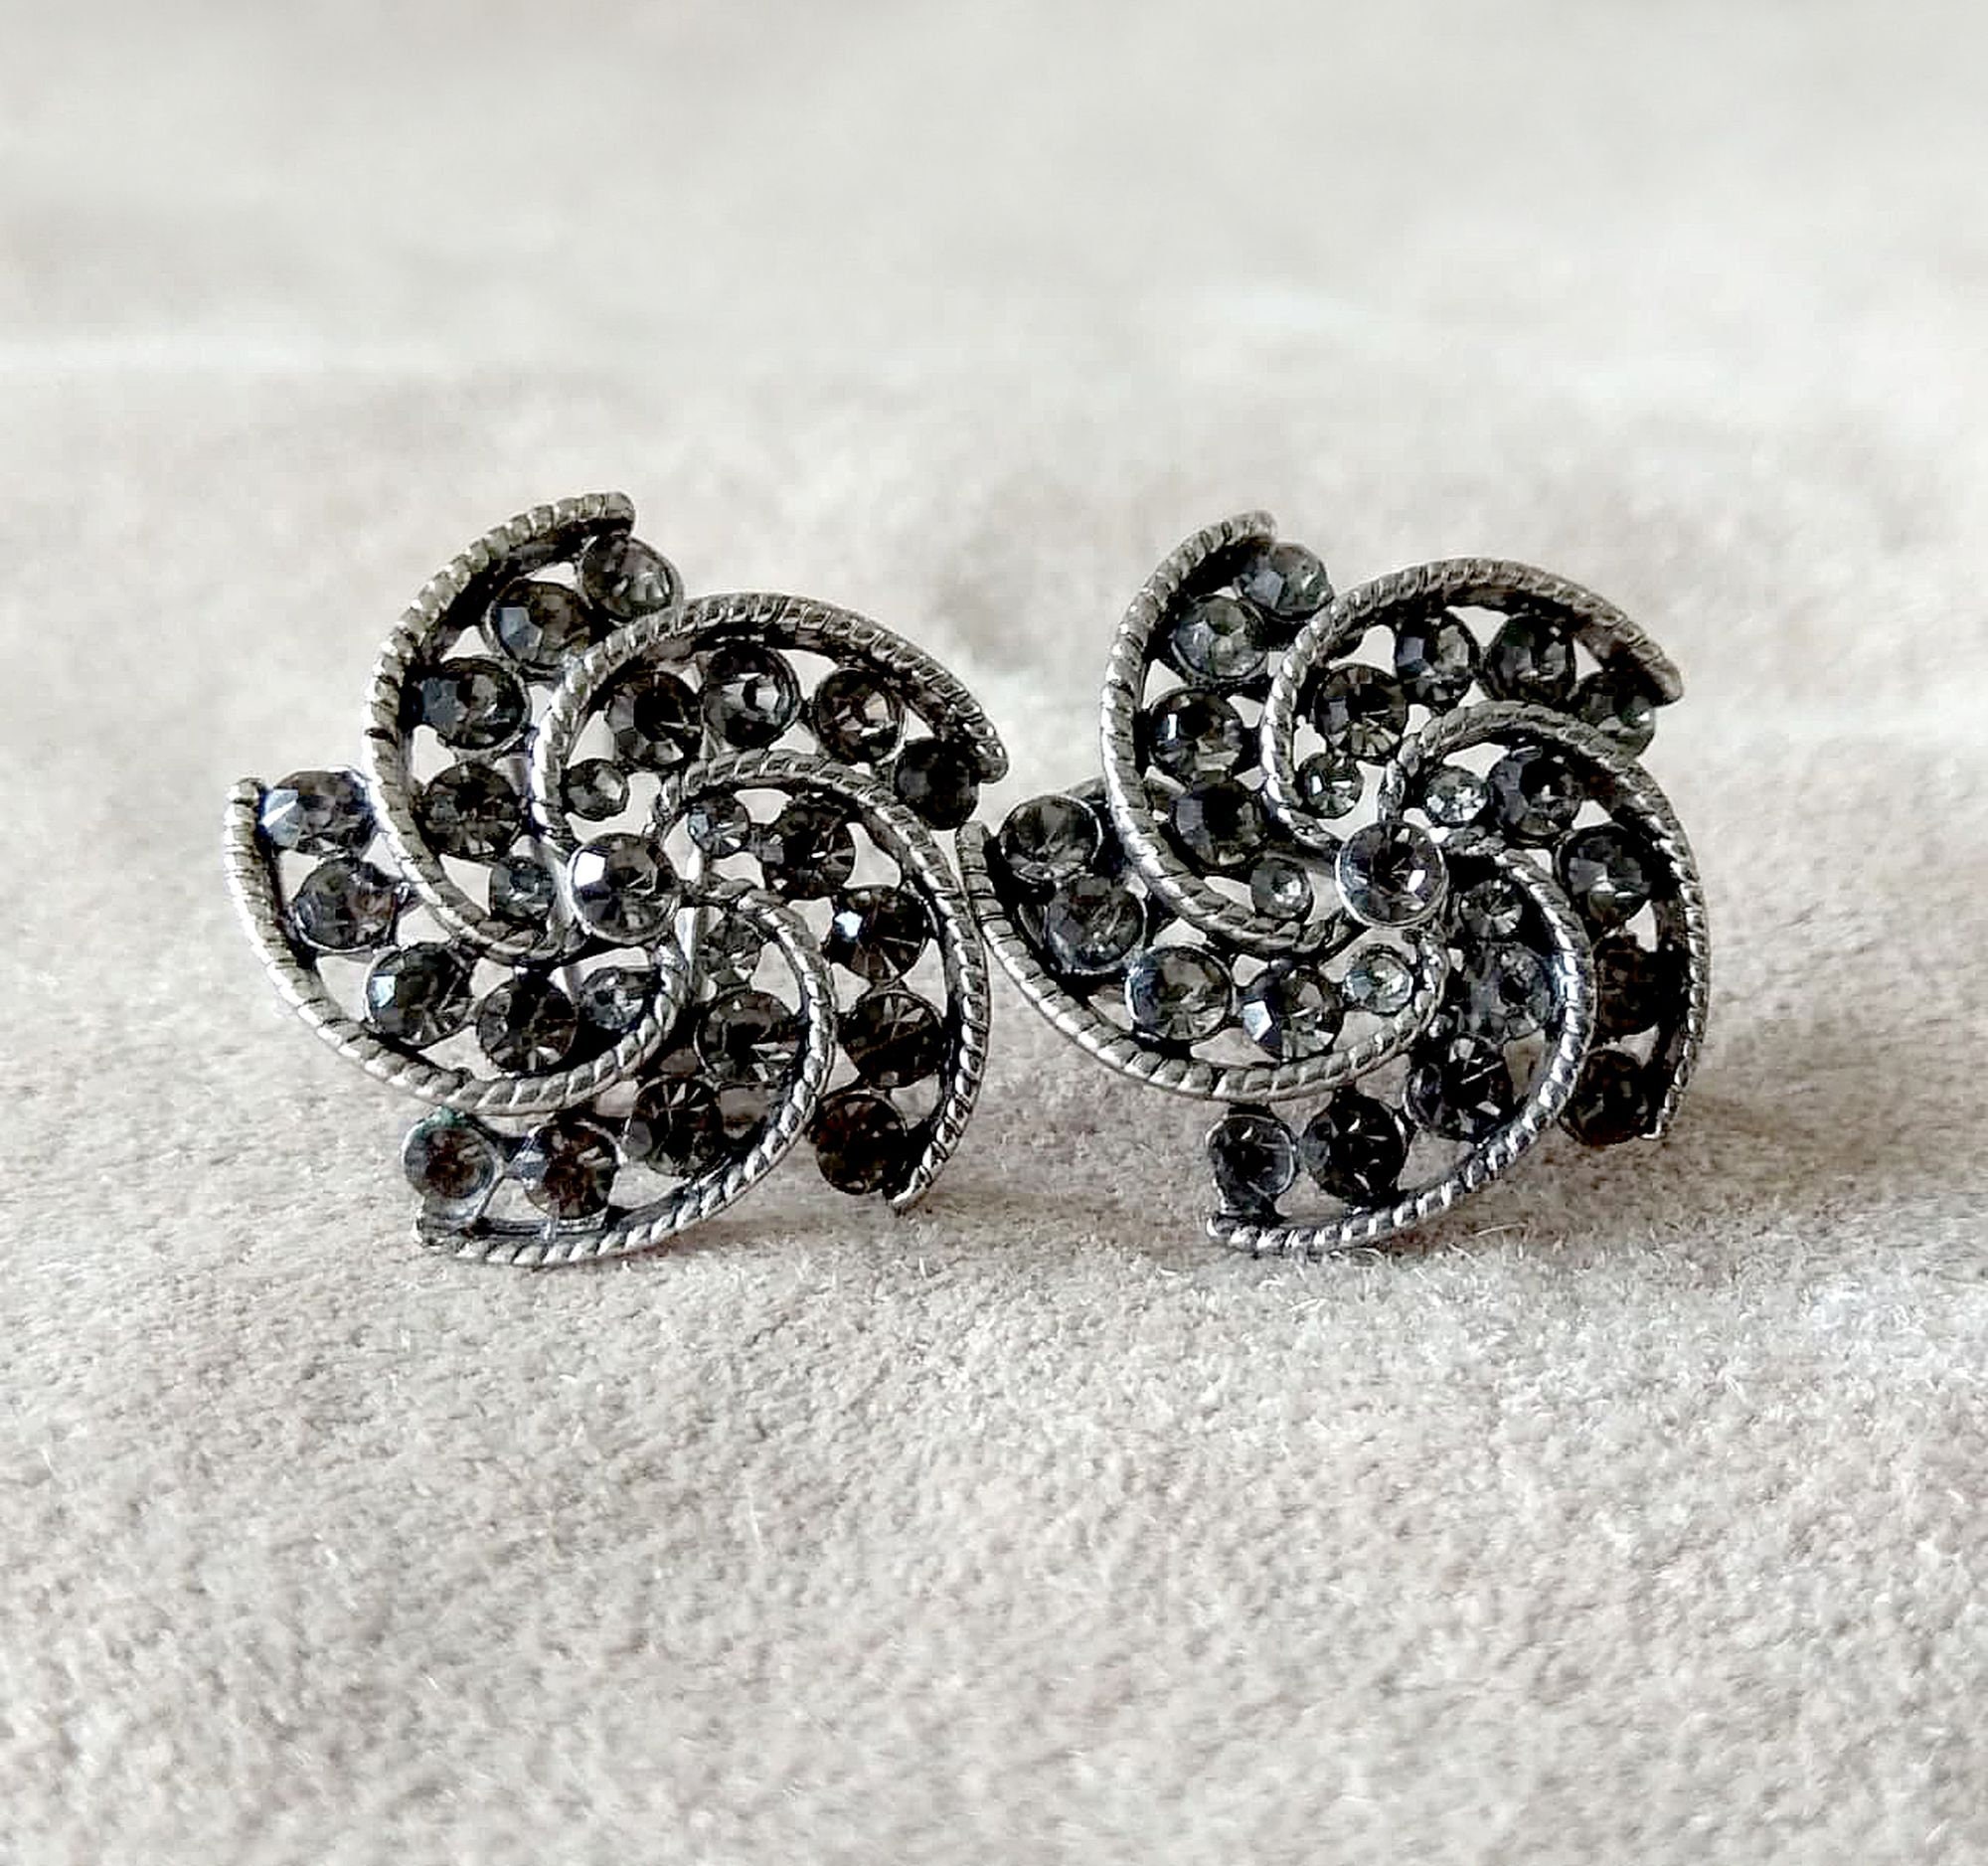 Vintage rhinestone floral earrings Elegant statement earrings | Etsy